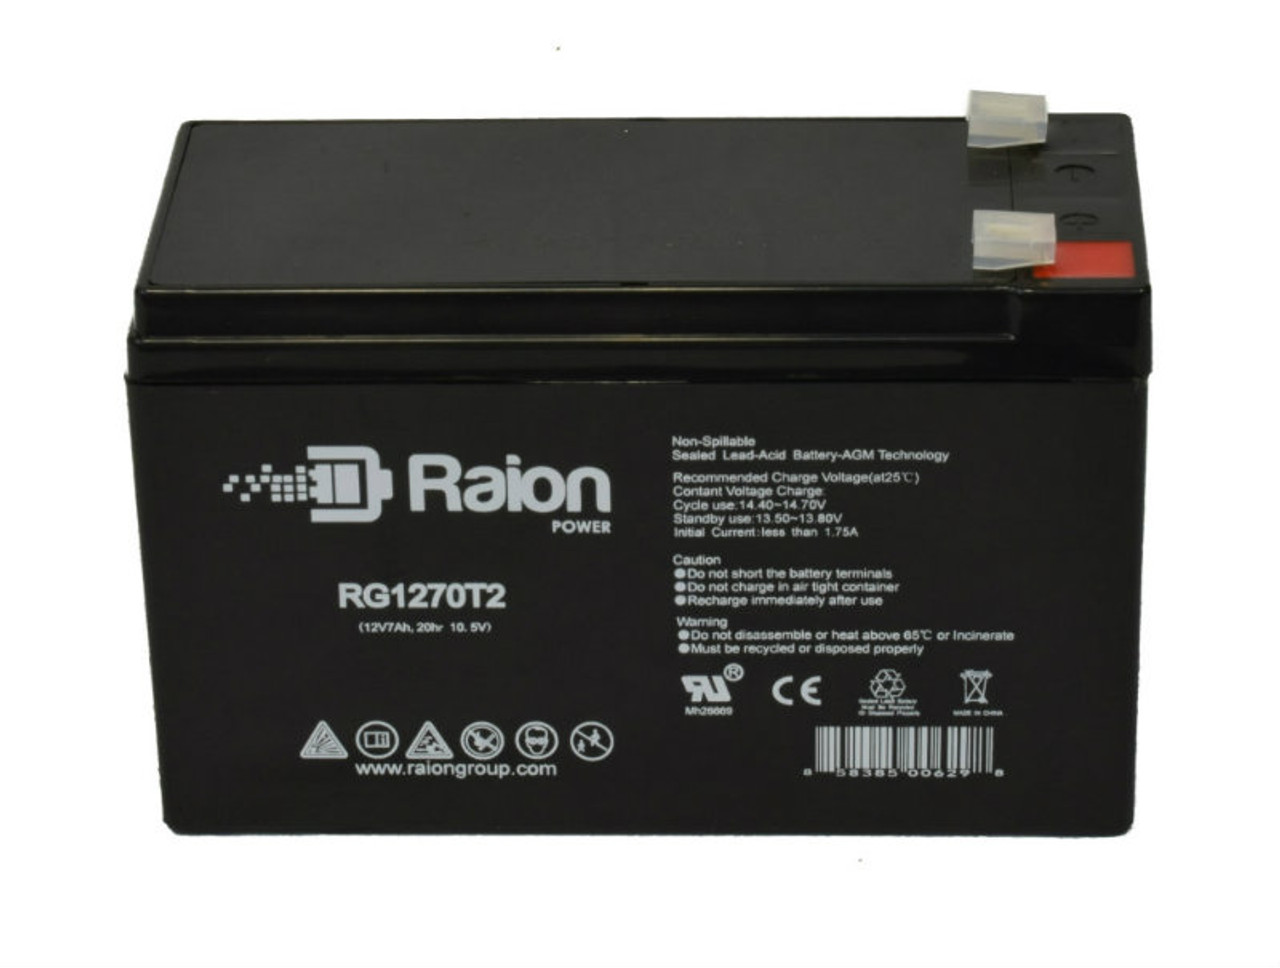 Raion Power RG1270T1 12V 7Ah Lead Acid Battery for ADT Security Alarm 477967